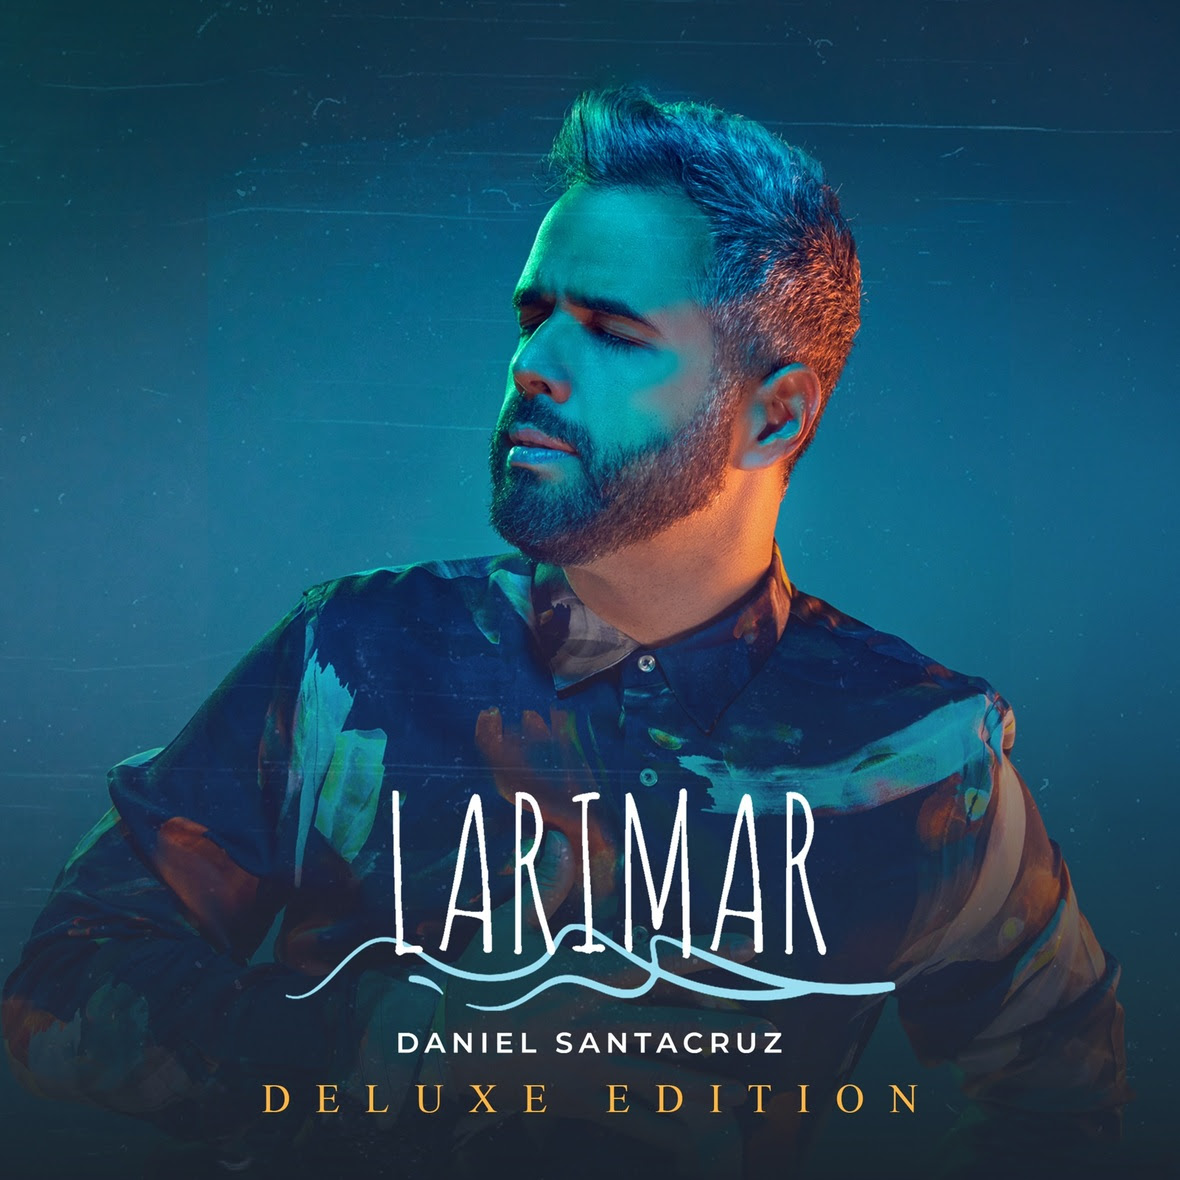 Daniel Santacruz lanza documental junto a nuevo álbum "Larimar Deluxe"